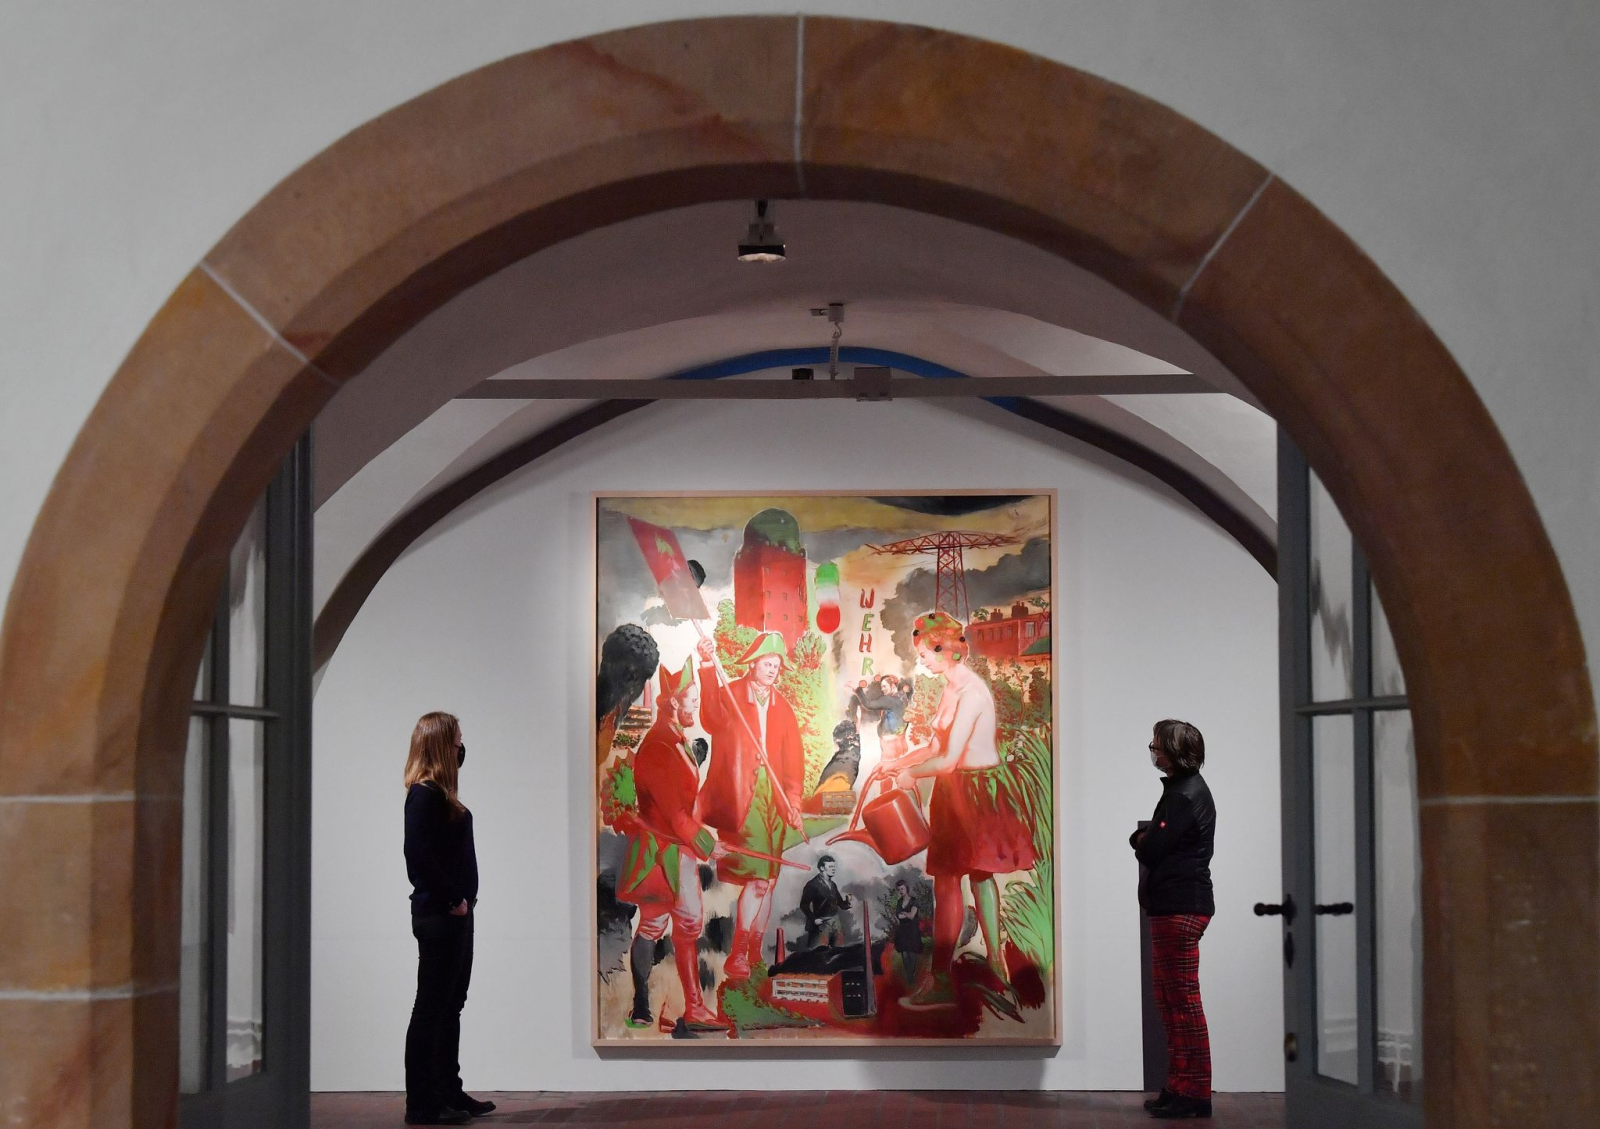 Zwei Frauen betrachten das Bild "Wehr" (2018) des Malers Neo Rauch in der Sonderausstellung der Heidecksburg.